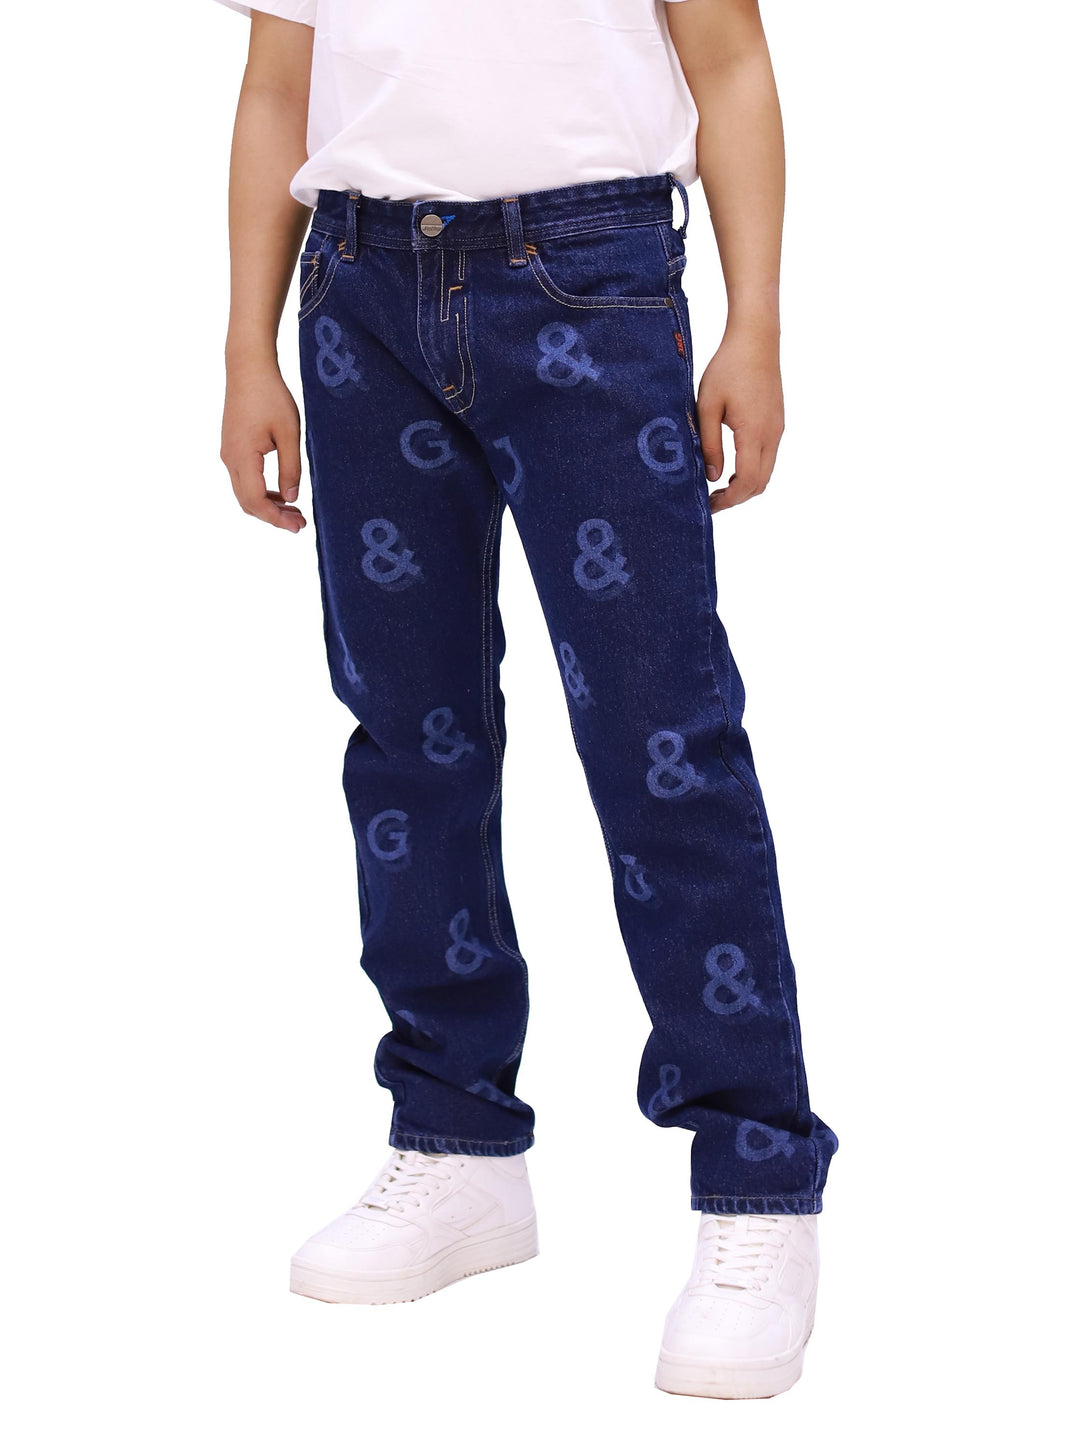 J&G Full Print Jeans